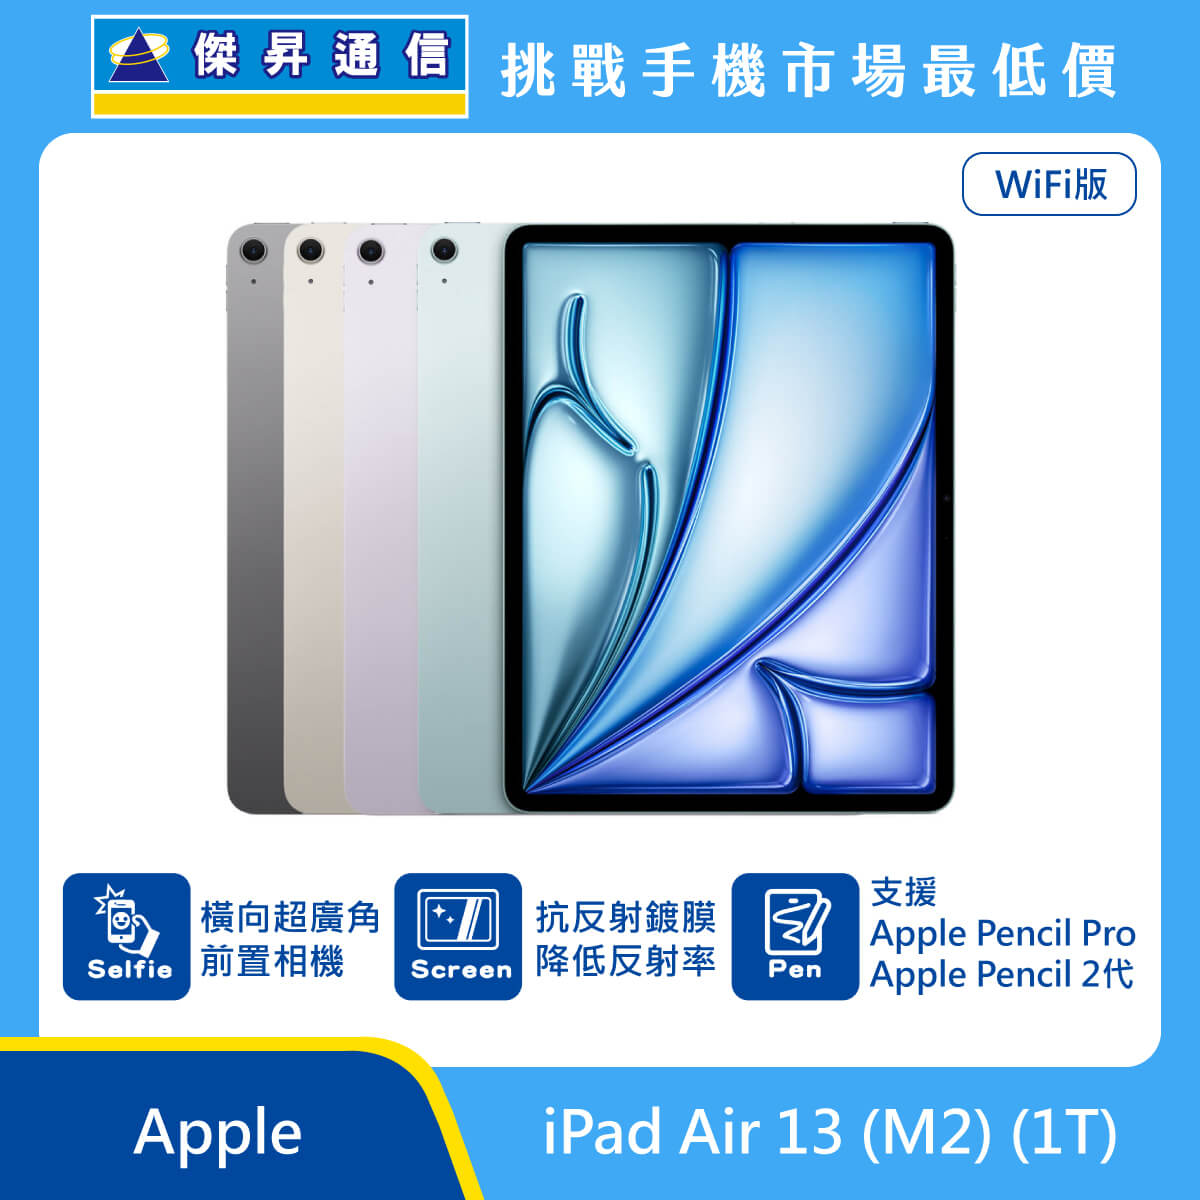 Apple 平板 iPad Air 13 M2 Wi-Fi (1T) 即將上市